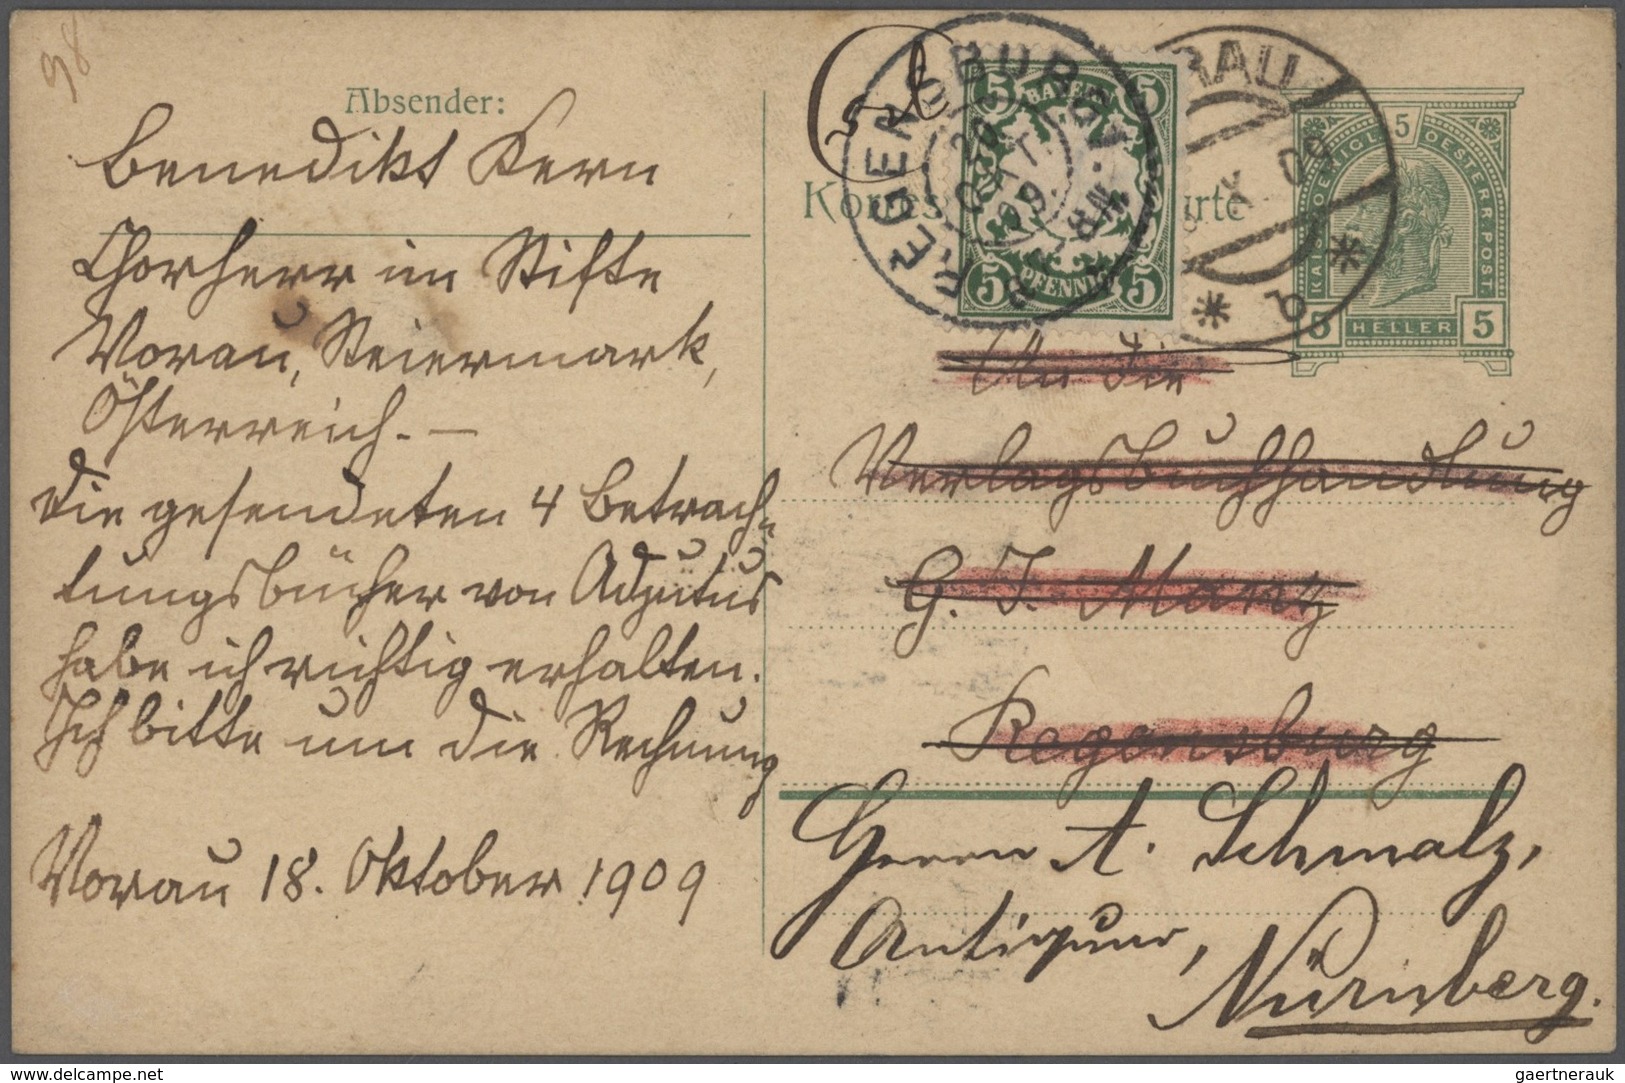 31201 Bayern - Marken und Briefe: 1875/1920 Schöner Posten von 37 un(ter)frankierten Bayern-Belegen mit NA